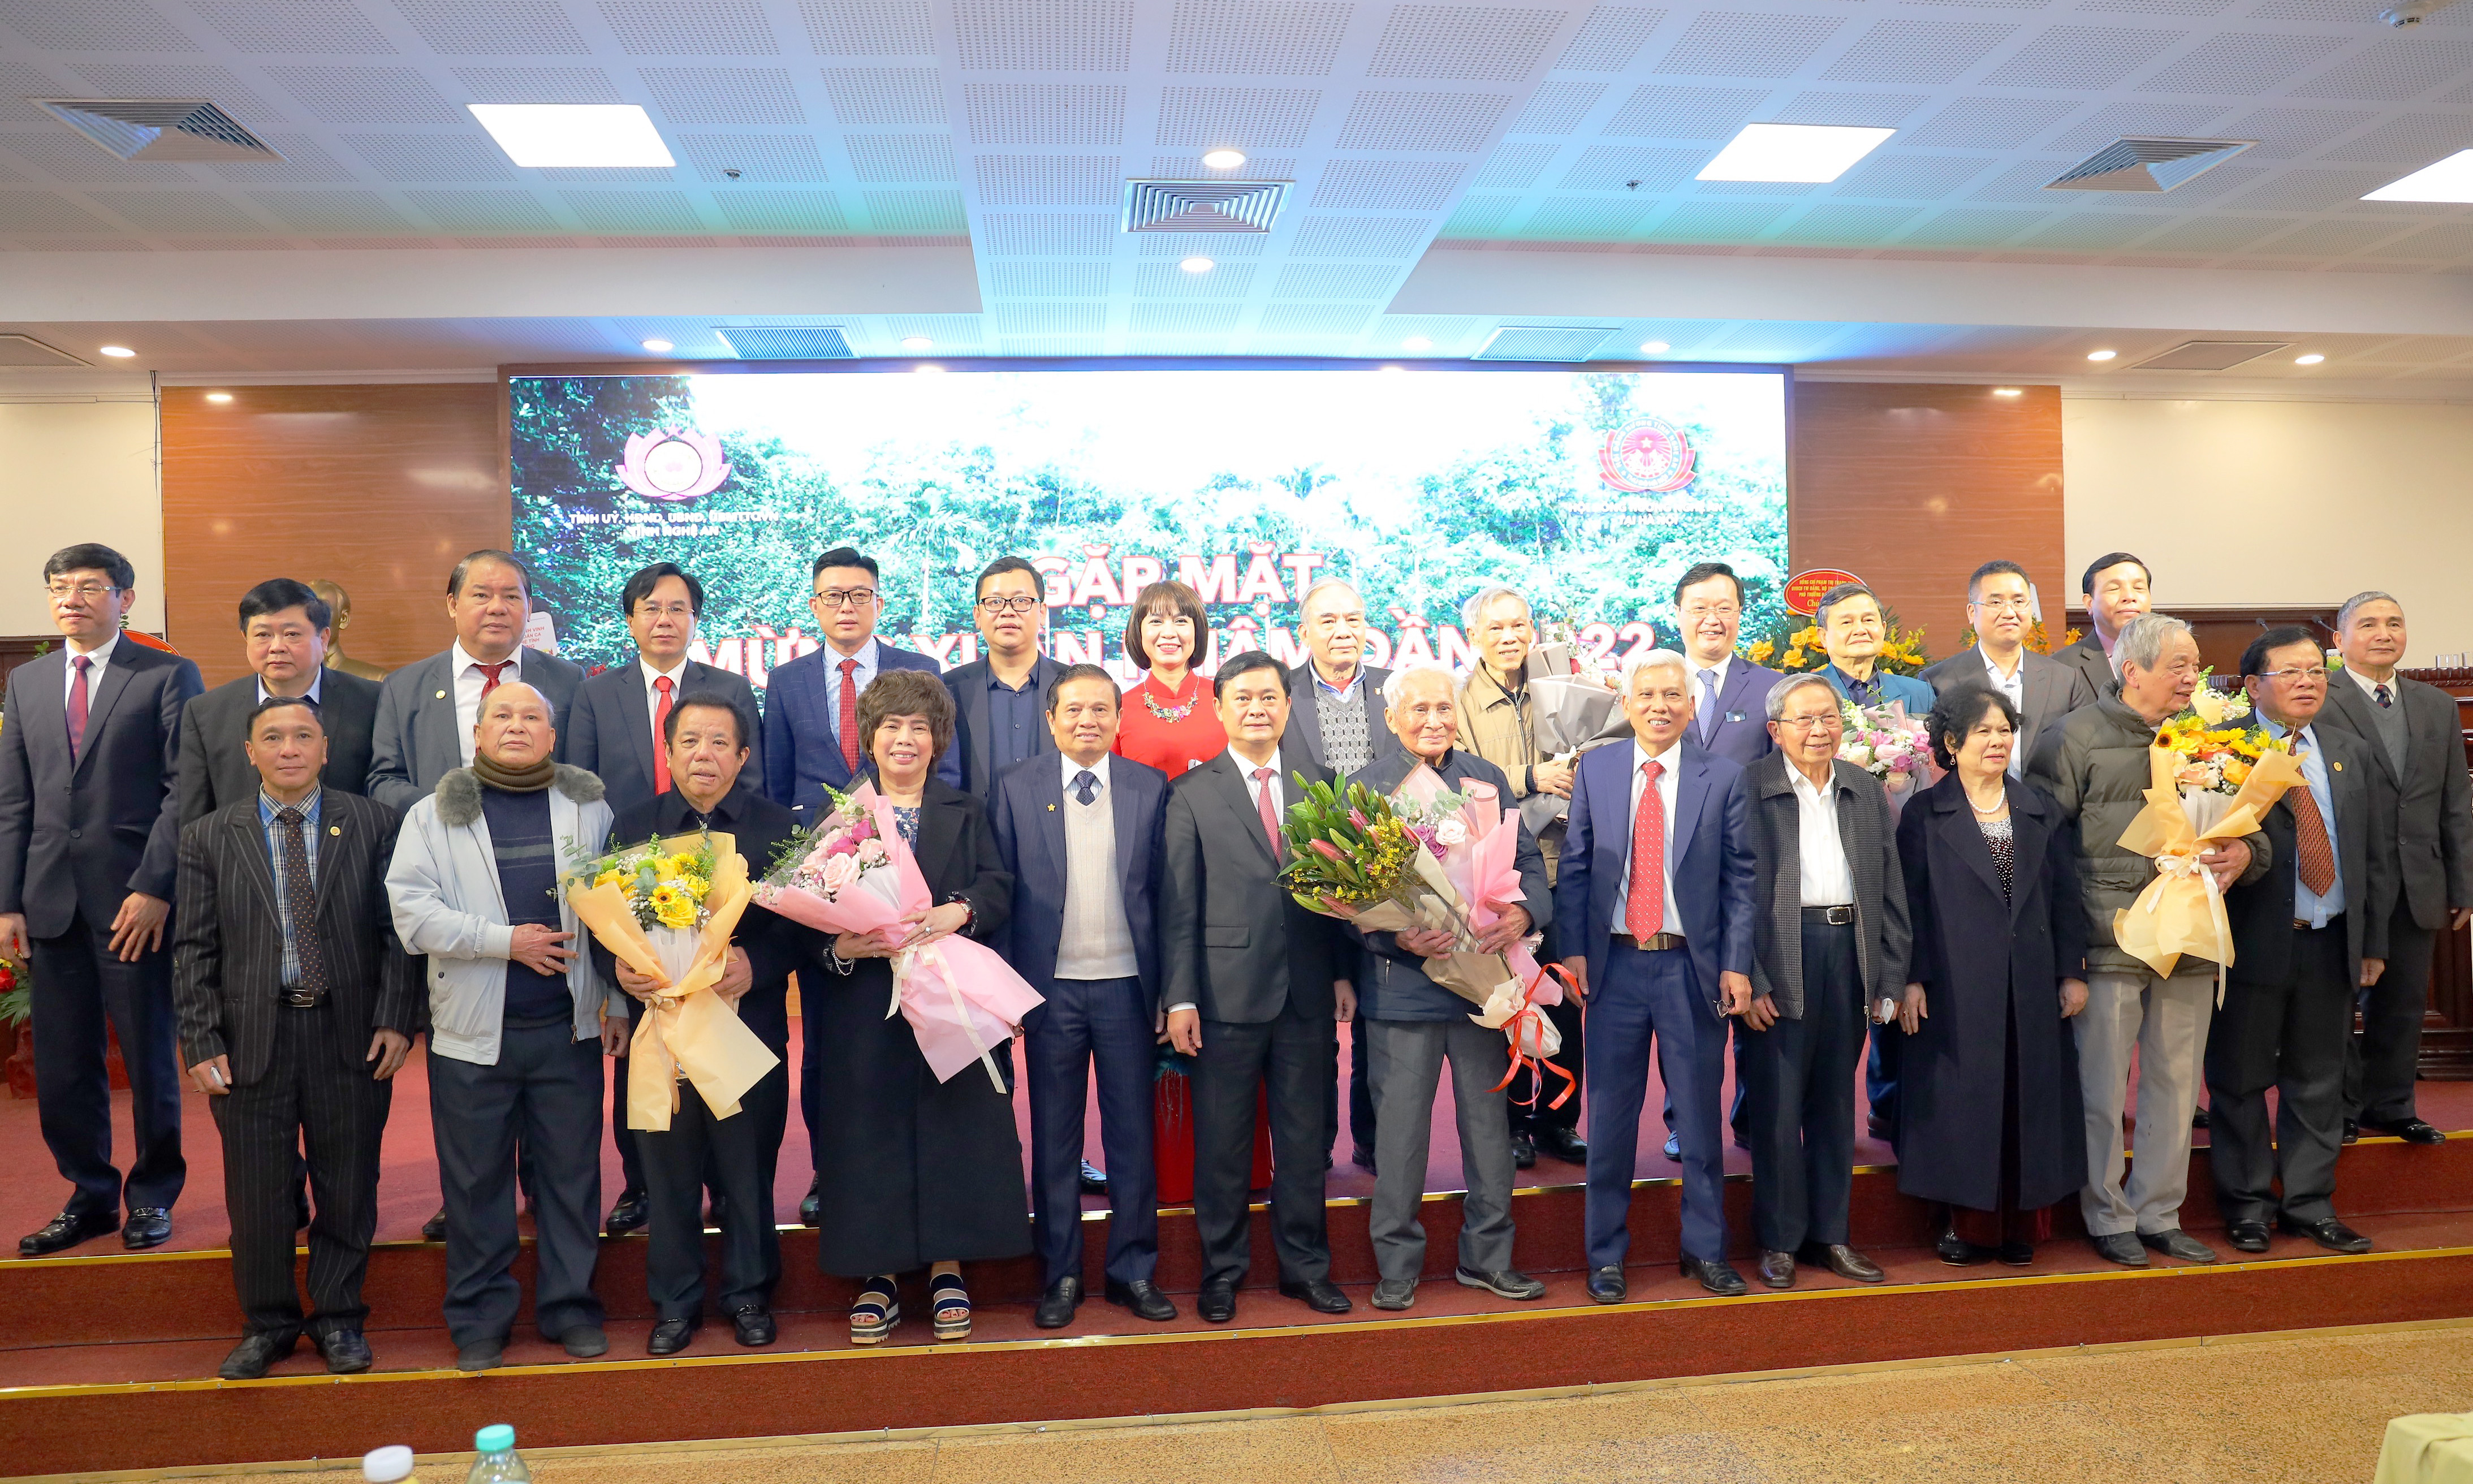 Lãnh đạo tỉnh và Ban liên lạc Hội đồng hương Nghệ An tại Hà Nội tặng hoa chúc mừng các doanh nhân người Nghệ An có nhiều đóng góp tích cực. Ảnh Nguyên Nguyên